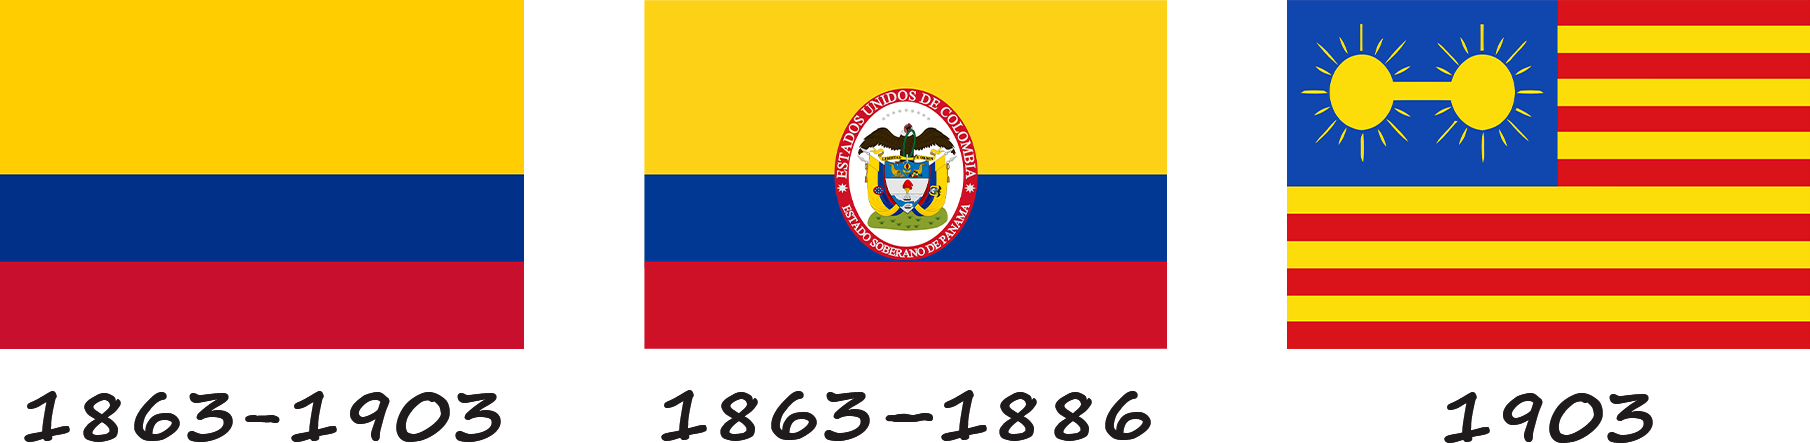 Historia de la bandera de Panamá